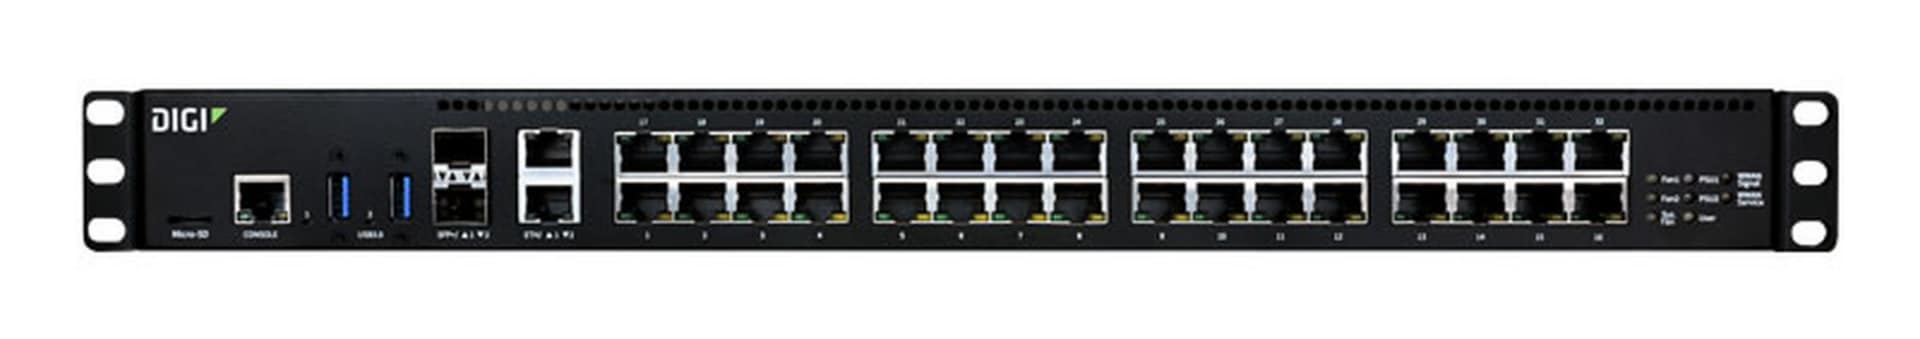 Digi Connect EZ 32-Port MEI Serial Server - US Power Cord